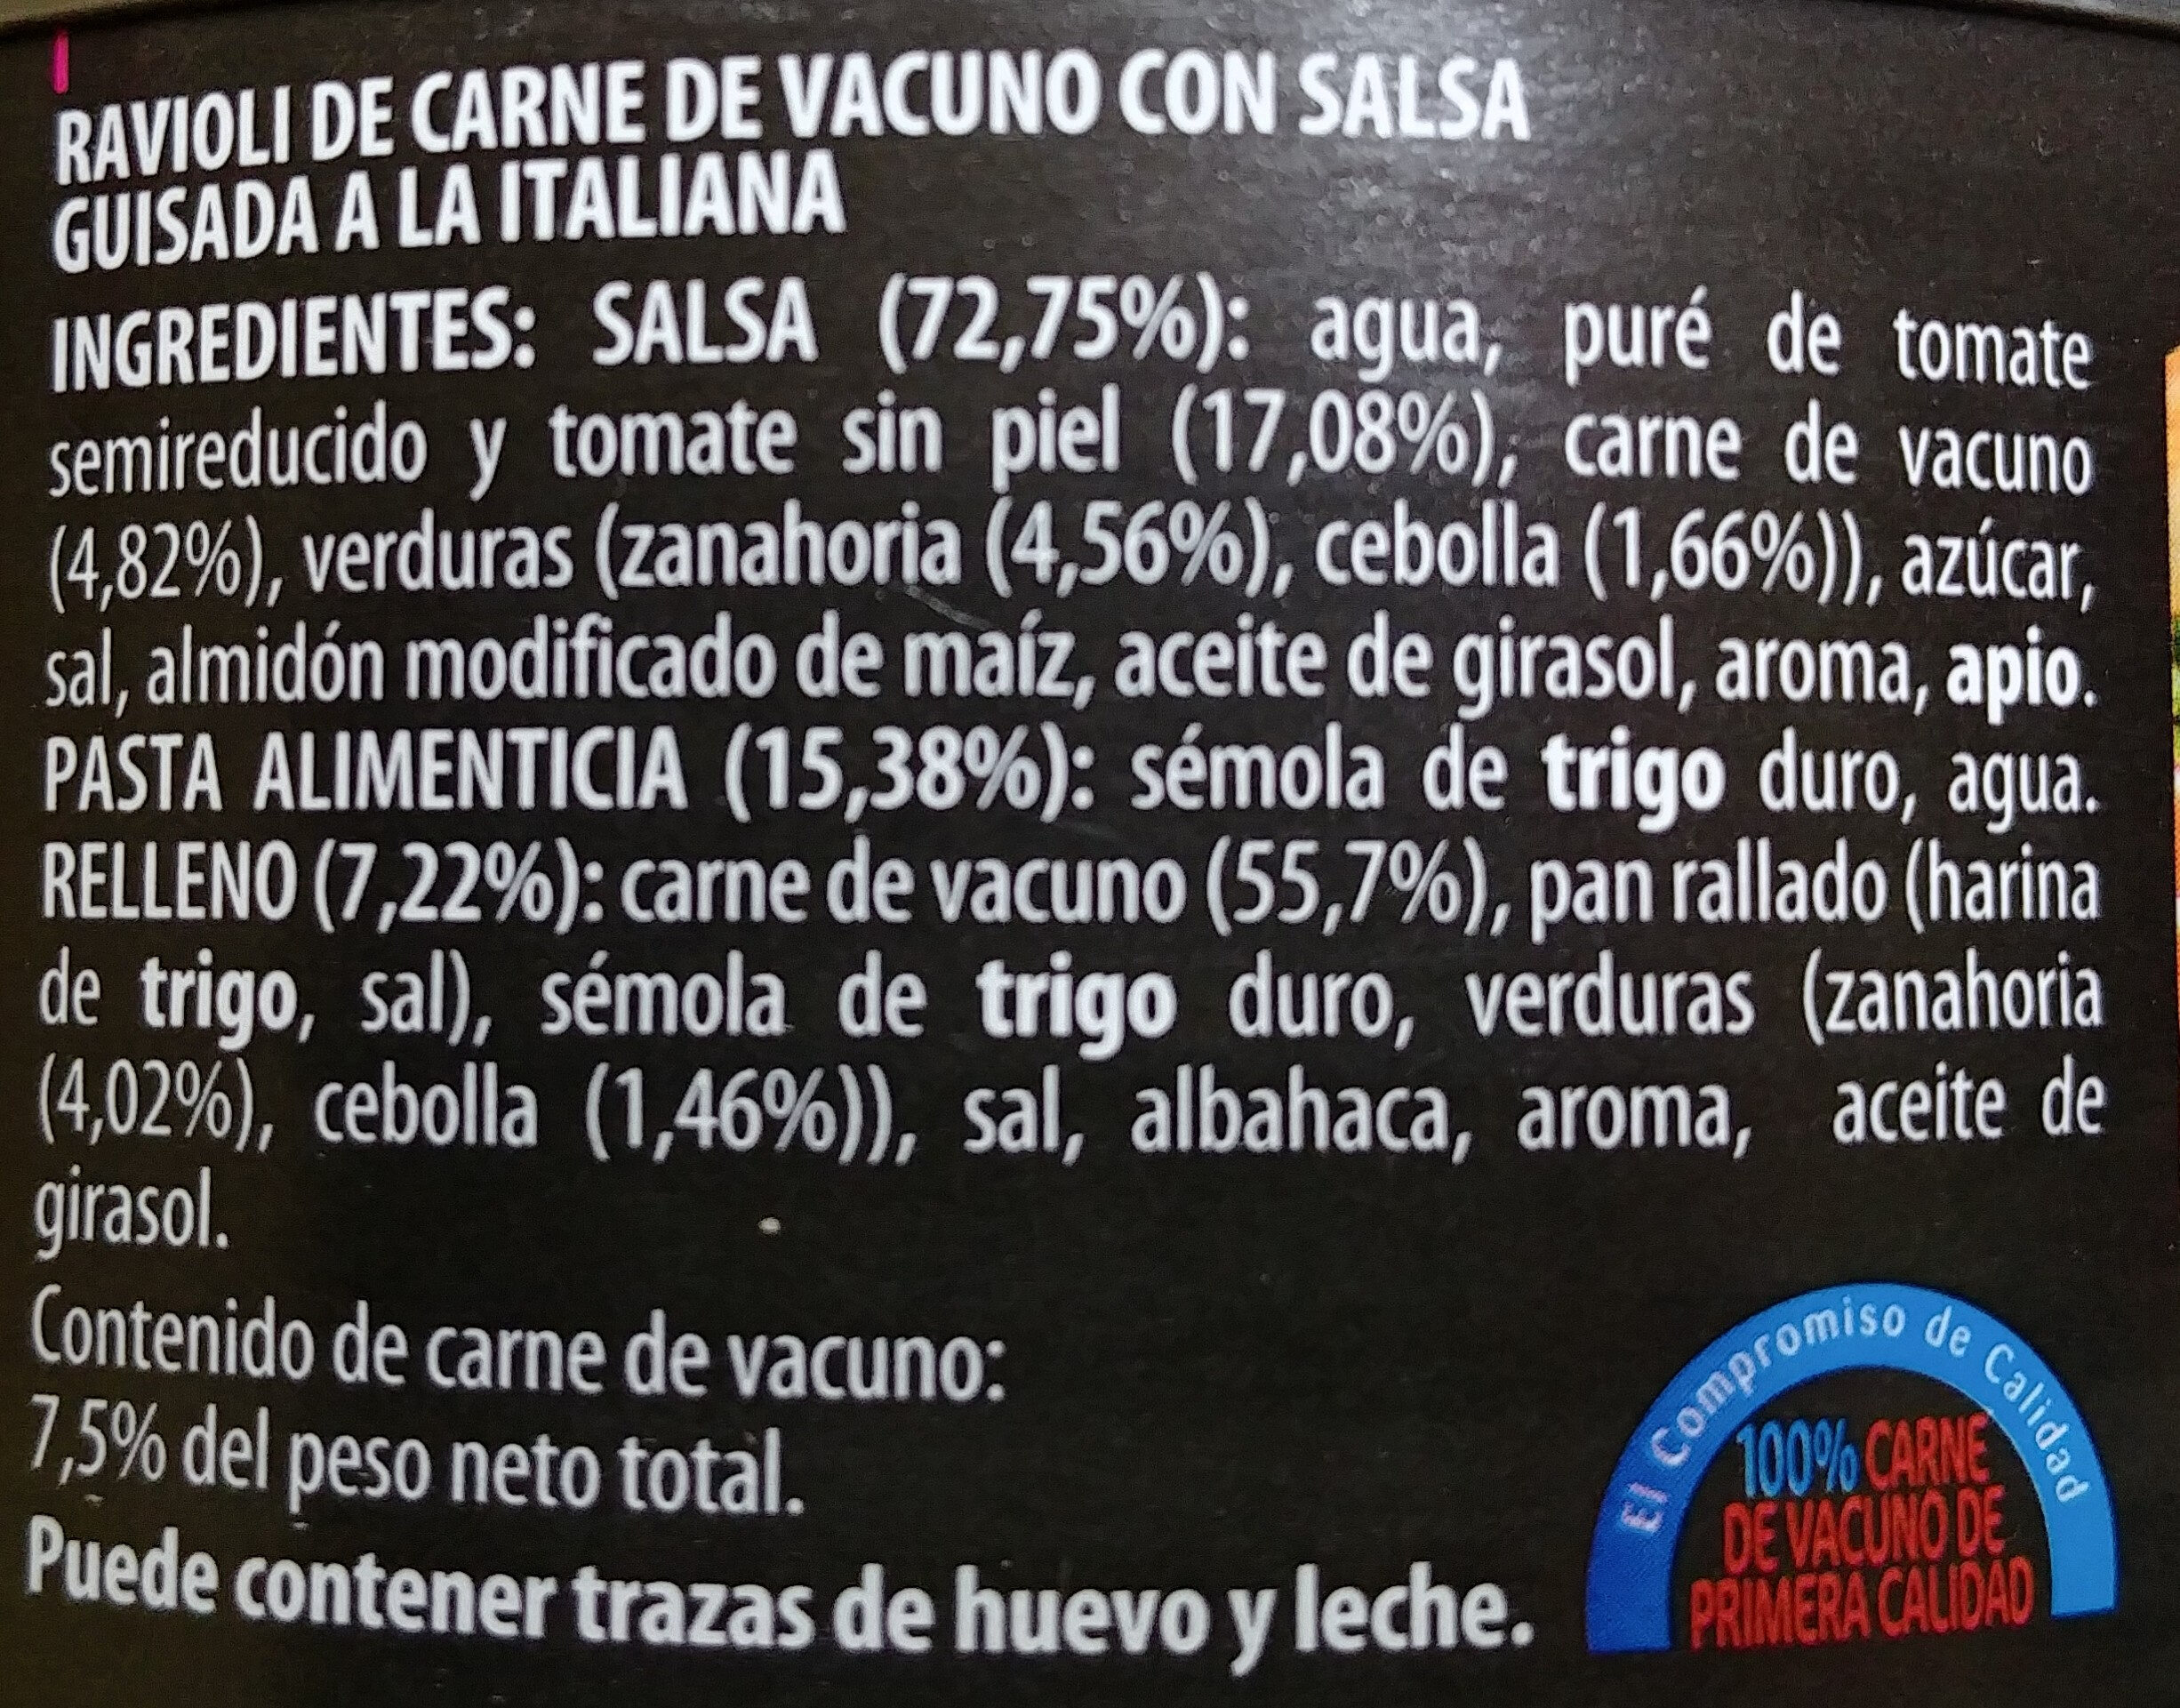 Riavoli de carne de vacuno con salsa guisada a la italiana - Ingredientes - es